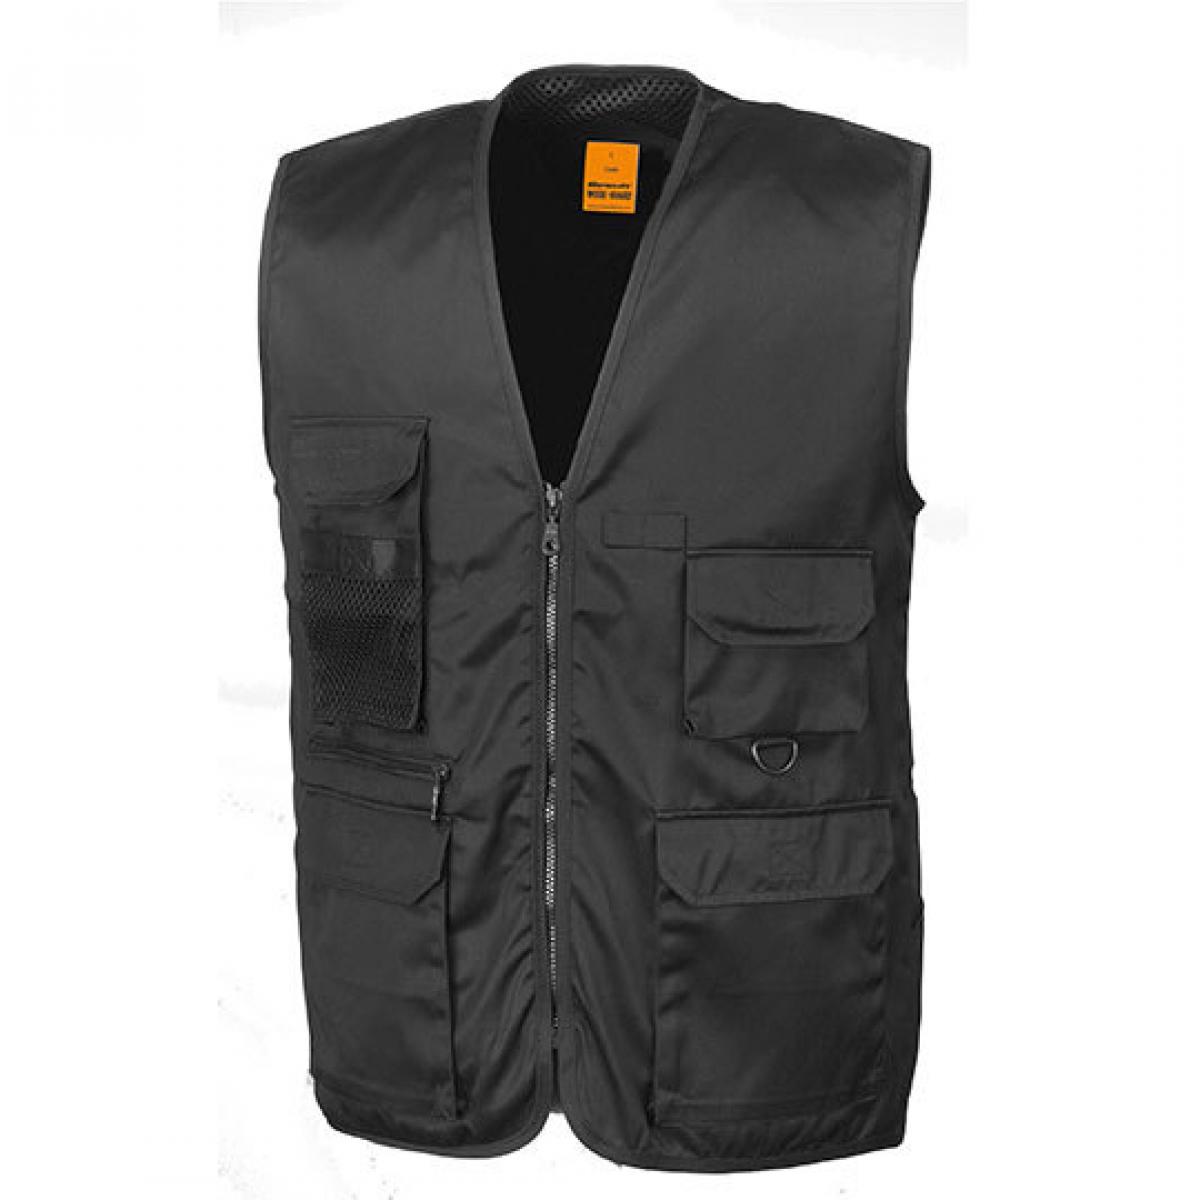 Hersteller: Result WORK-GUARD Herstellernummer: R45X Artikelbezeichnung: Herren Arbeitsweste Safari Vest Farbe: Black